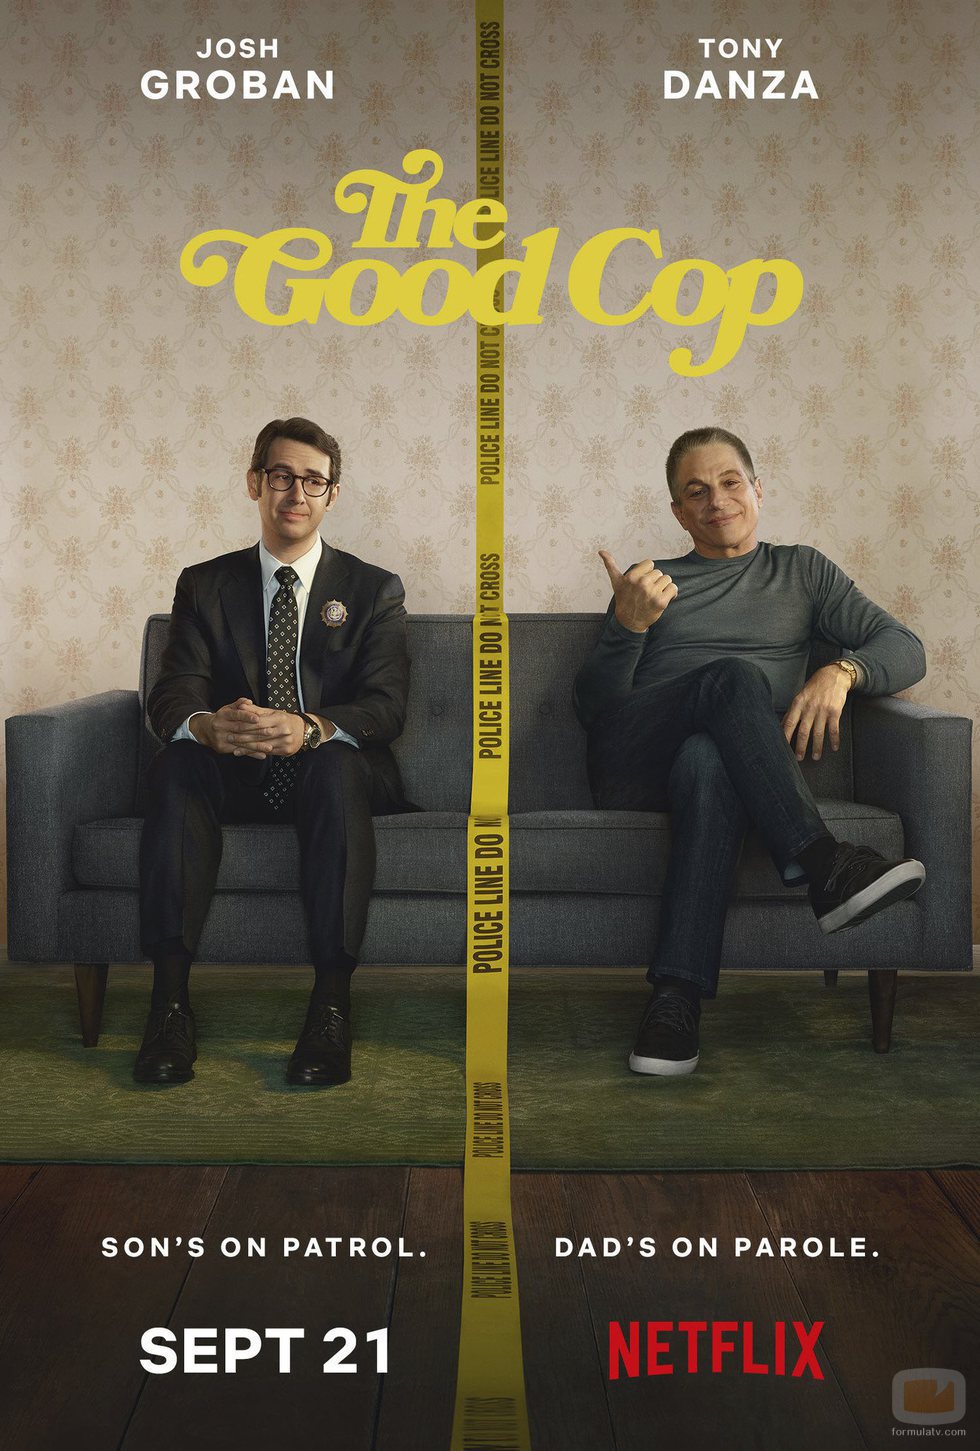 Póster promocional de 'The Good Cop', comedia policíaca de Netflix